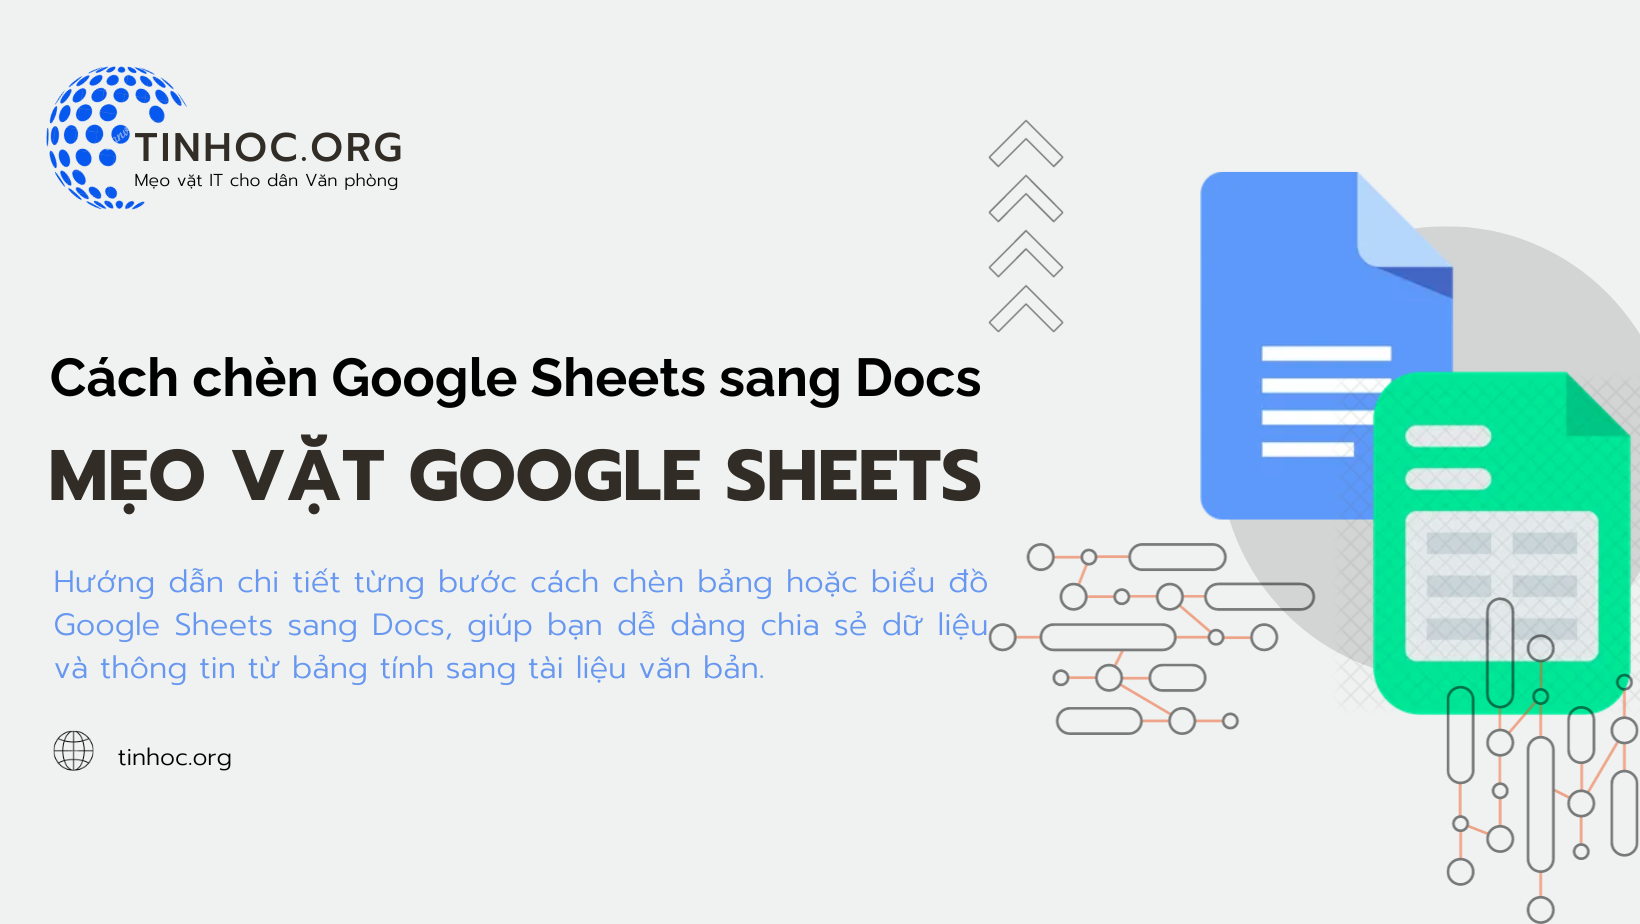 Bạn có biết rằng chỉ cần một vài bước đơn giản, bạn có thể chèn bảng hoặc biểu đồ Google Sheets vào tài liệu Docs của mình?